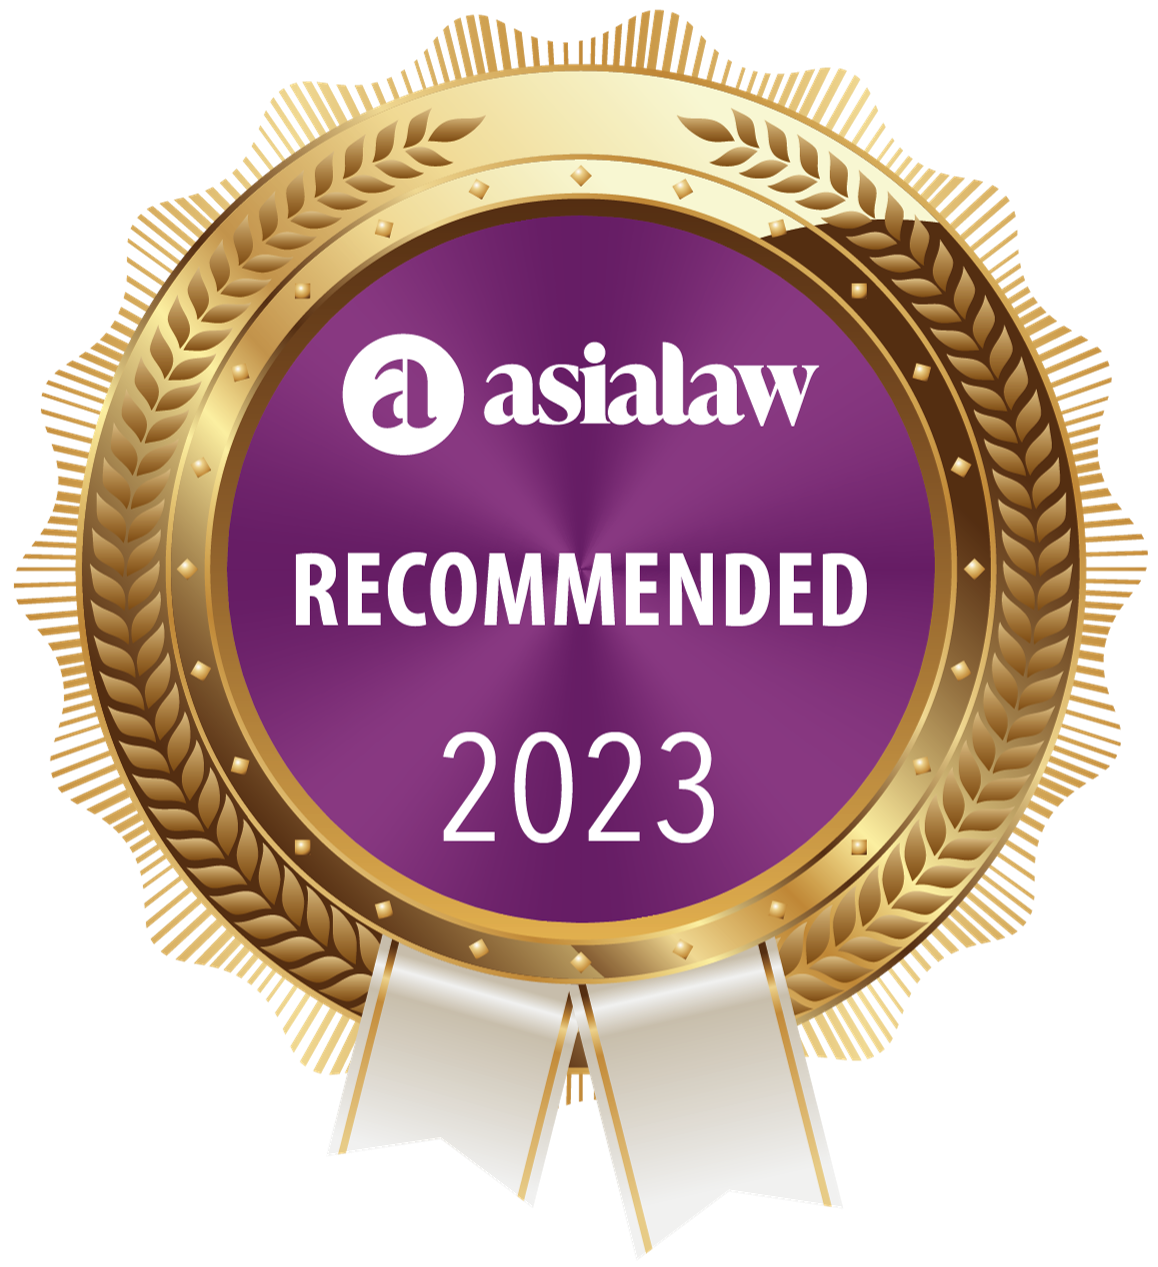 《亚洲法律》“推荐”香港律师事务所